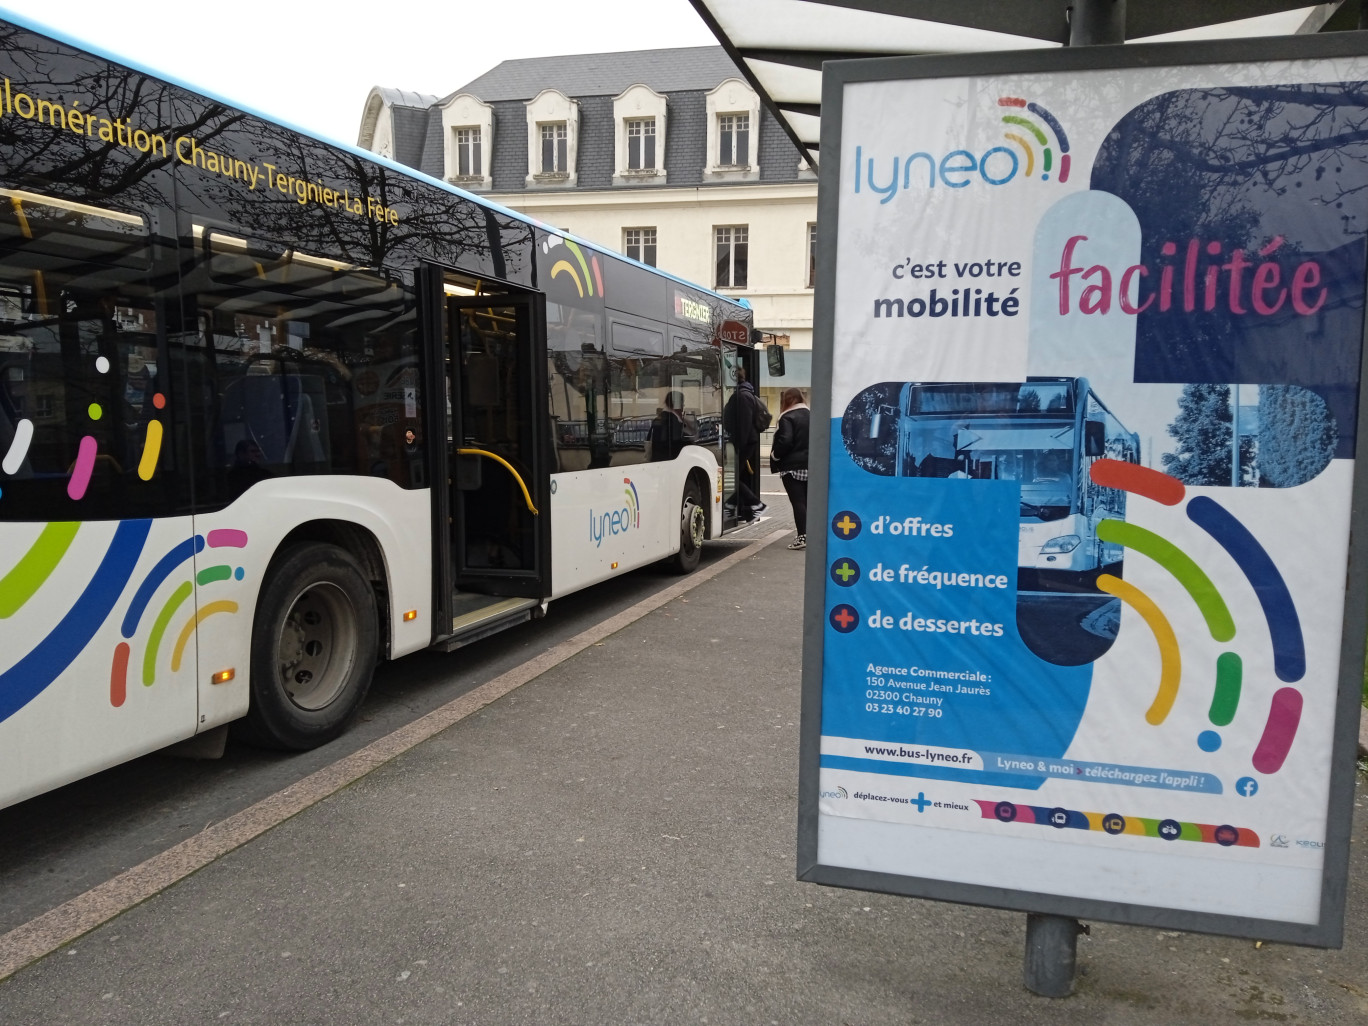 Depuis un mois, Lyneo remplace les TACT (Transports de l’agglomération Chauny-Tergnier) lancés en décembre 2011.